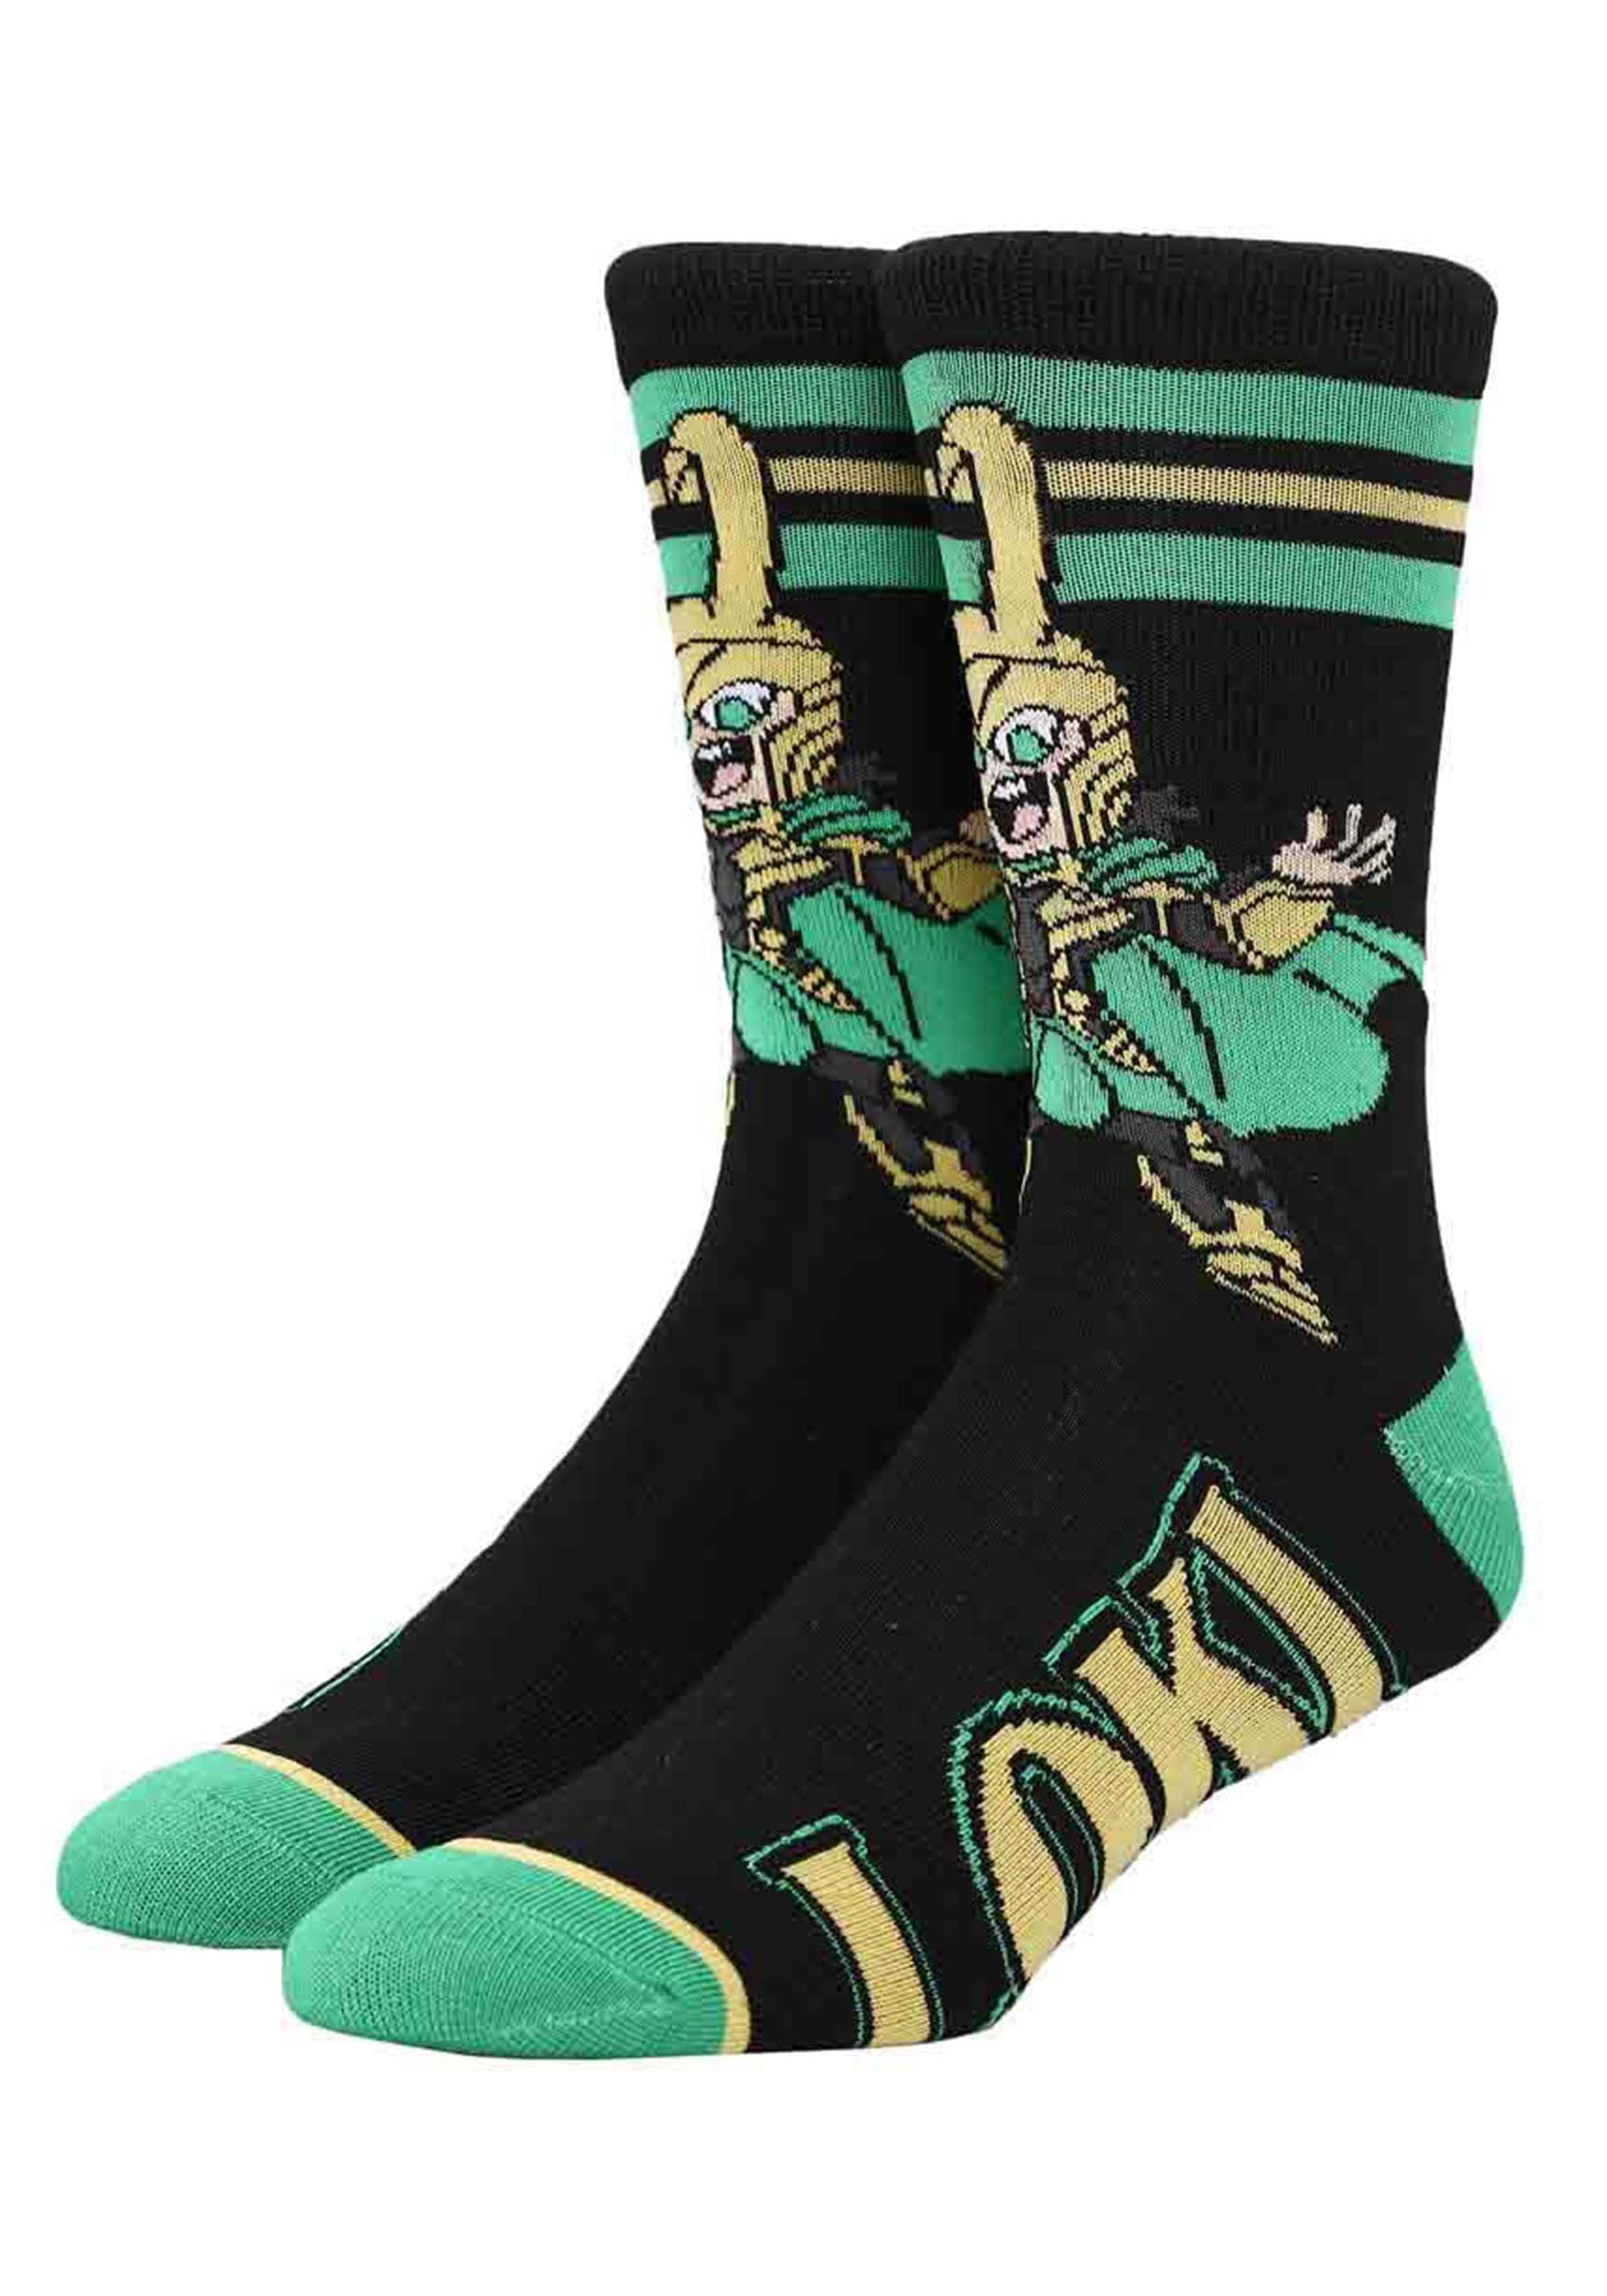 Marvel Loki Chibi Adult Crew Socks